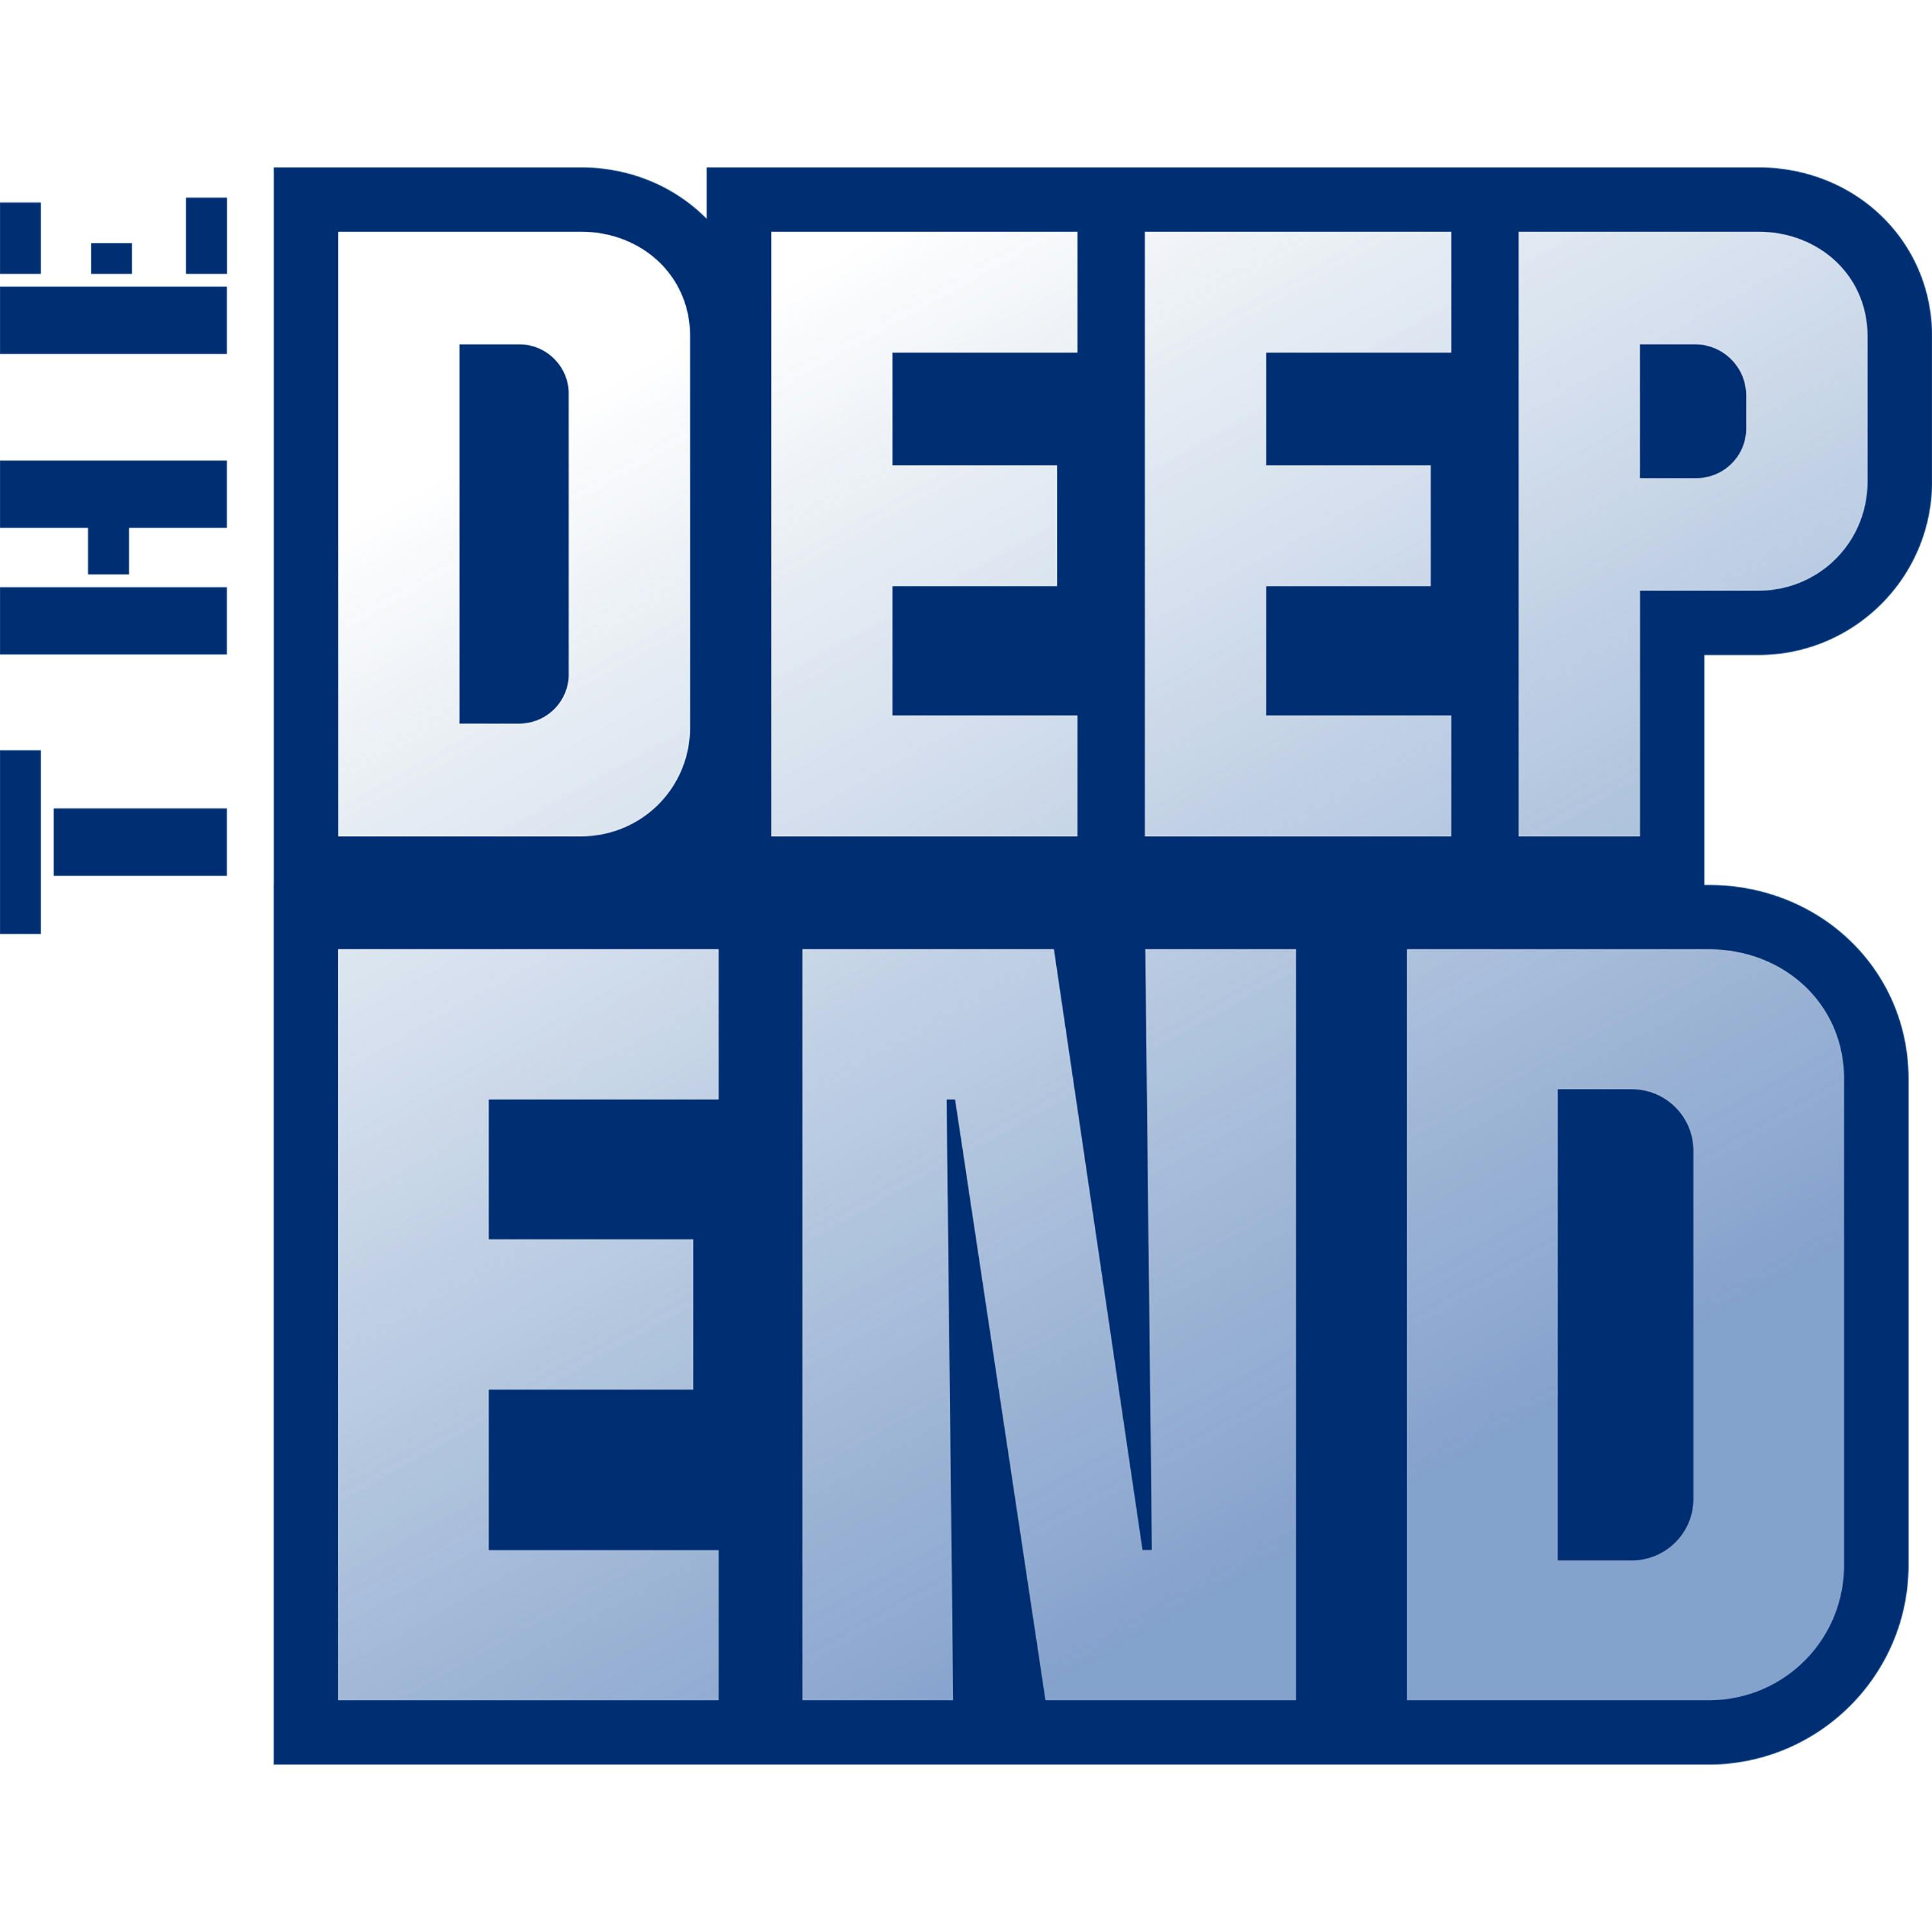 Deep End Invitational Update: Week 8 Shockers